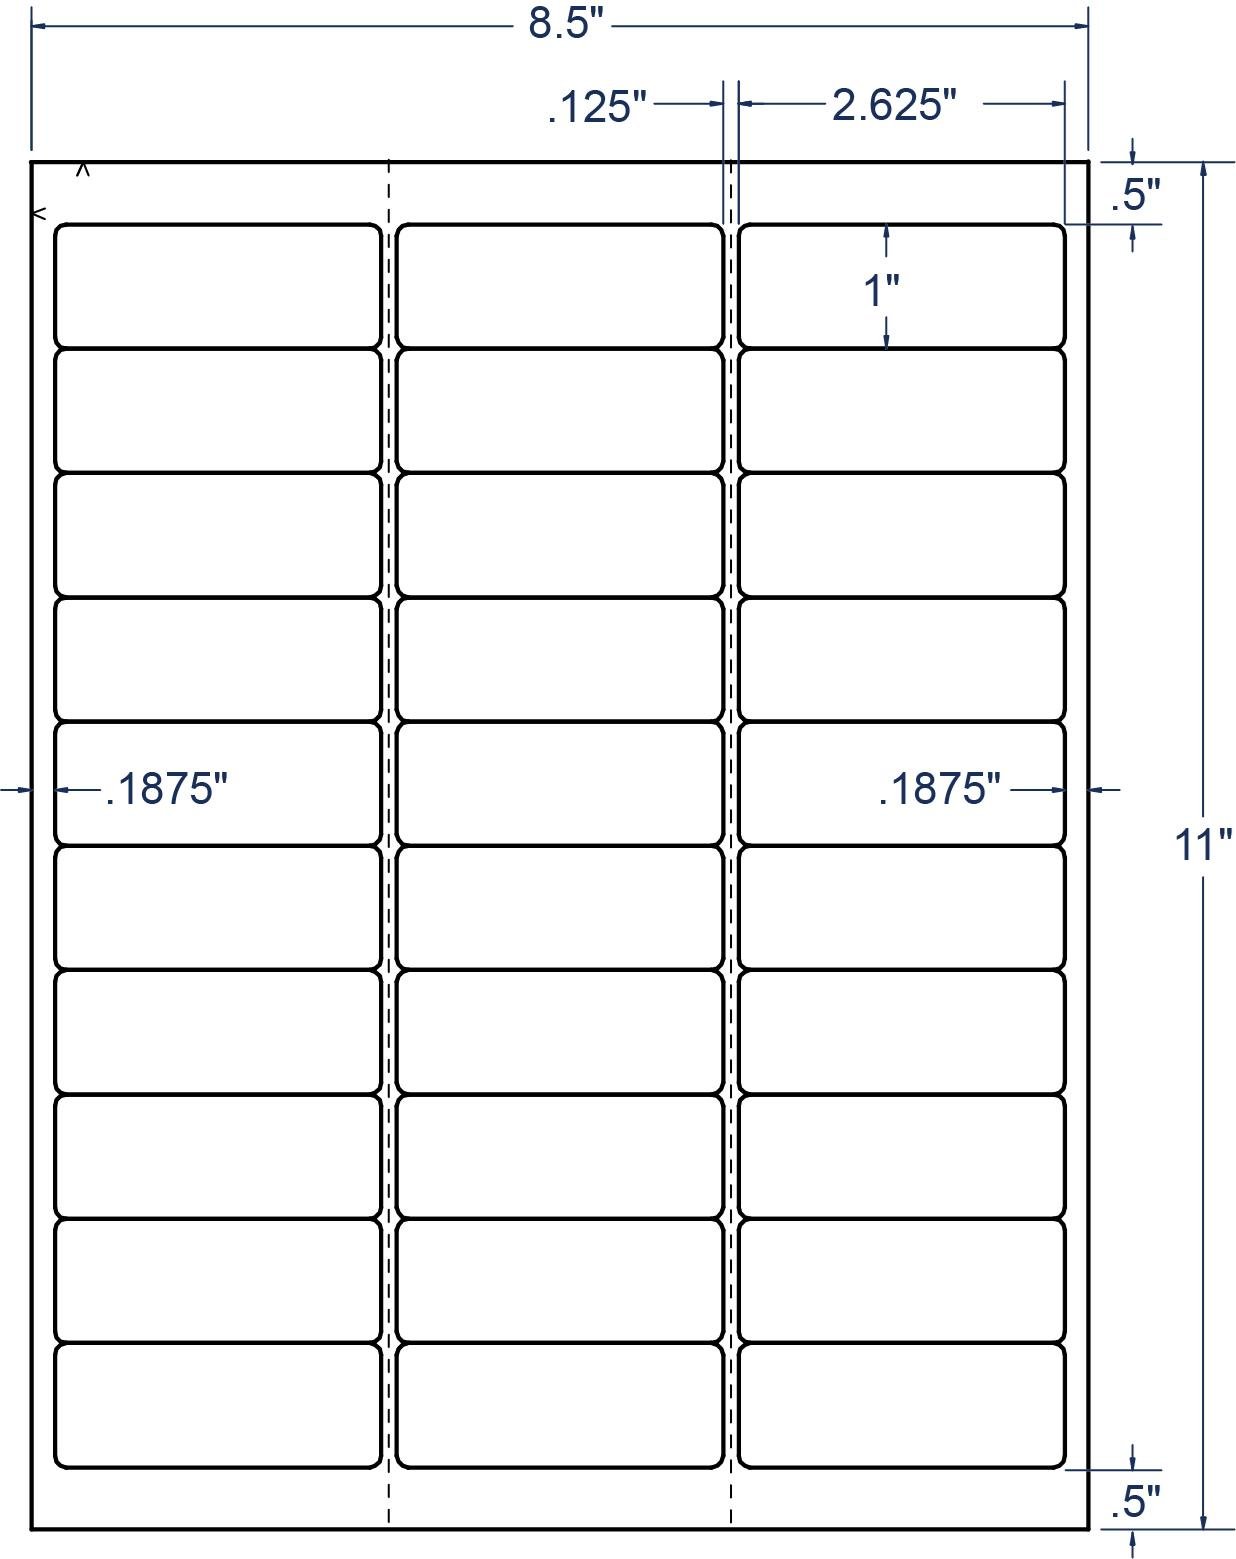 Ferie Adgang Skyldfølelse 2-5/8" x 1" Laser/Inkjet Labels (100 Sheets), Compulabel 310724